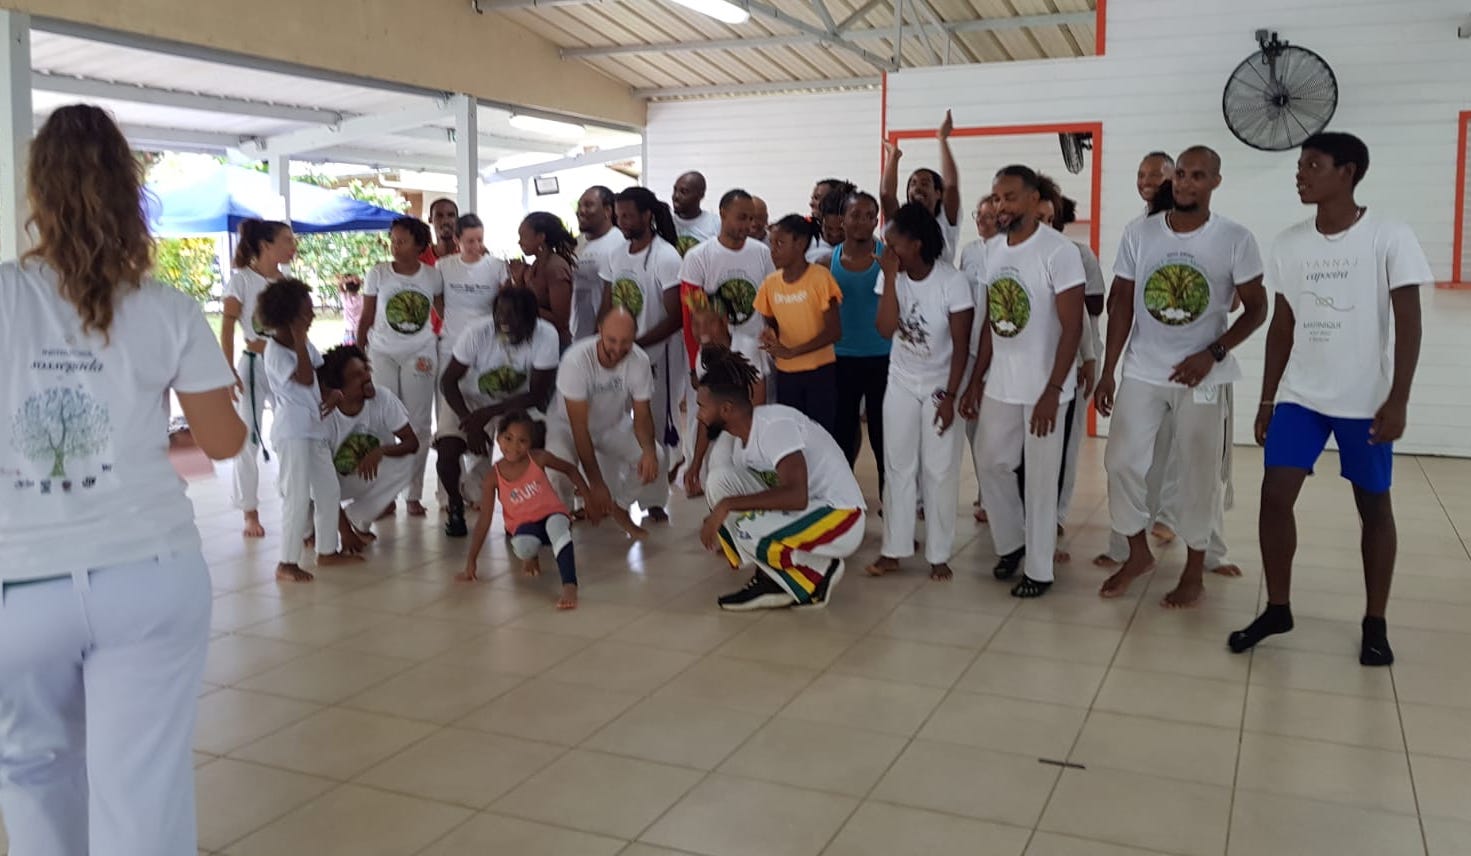     Une belle énergie autour du festival « Lyannaj Capoeira » en Martinique 

